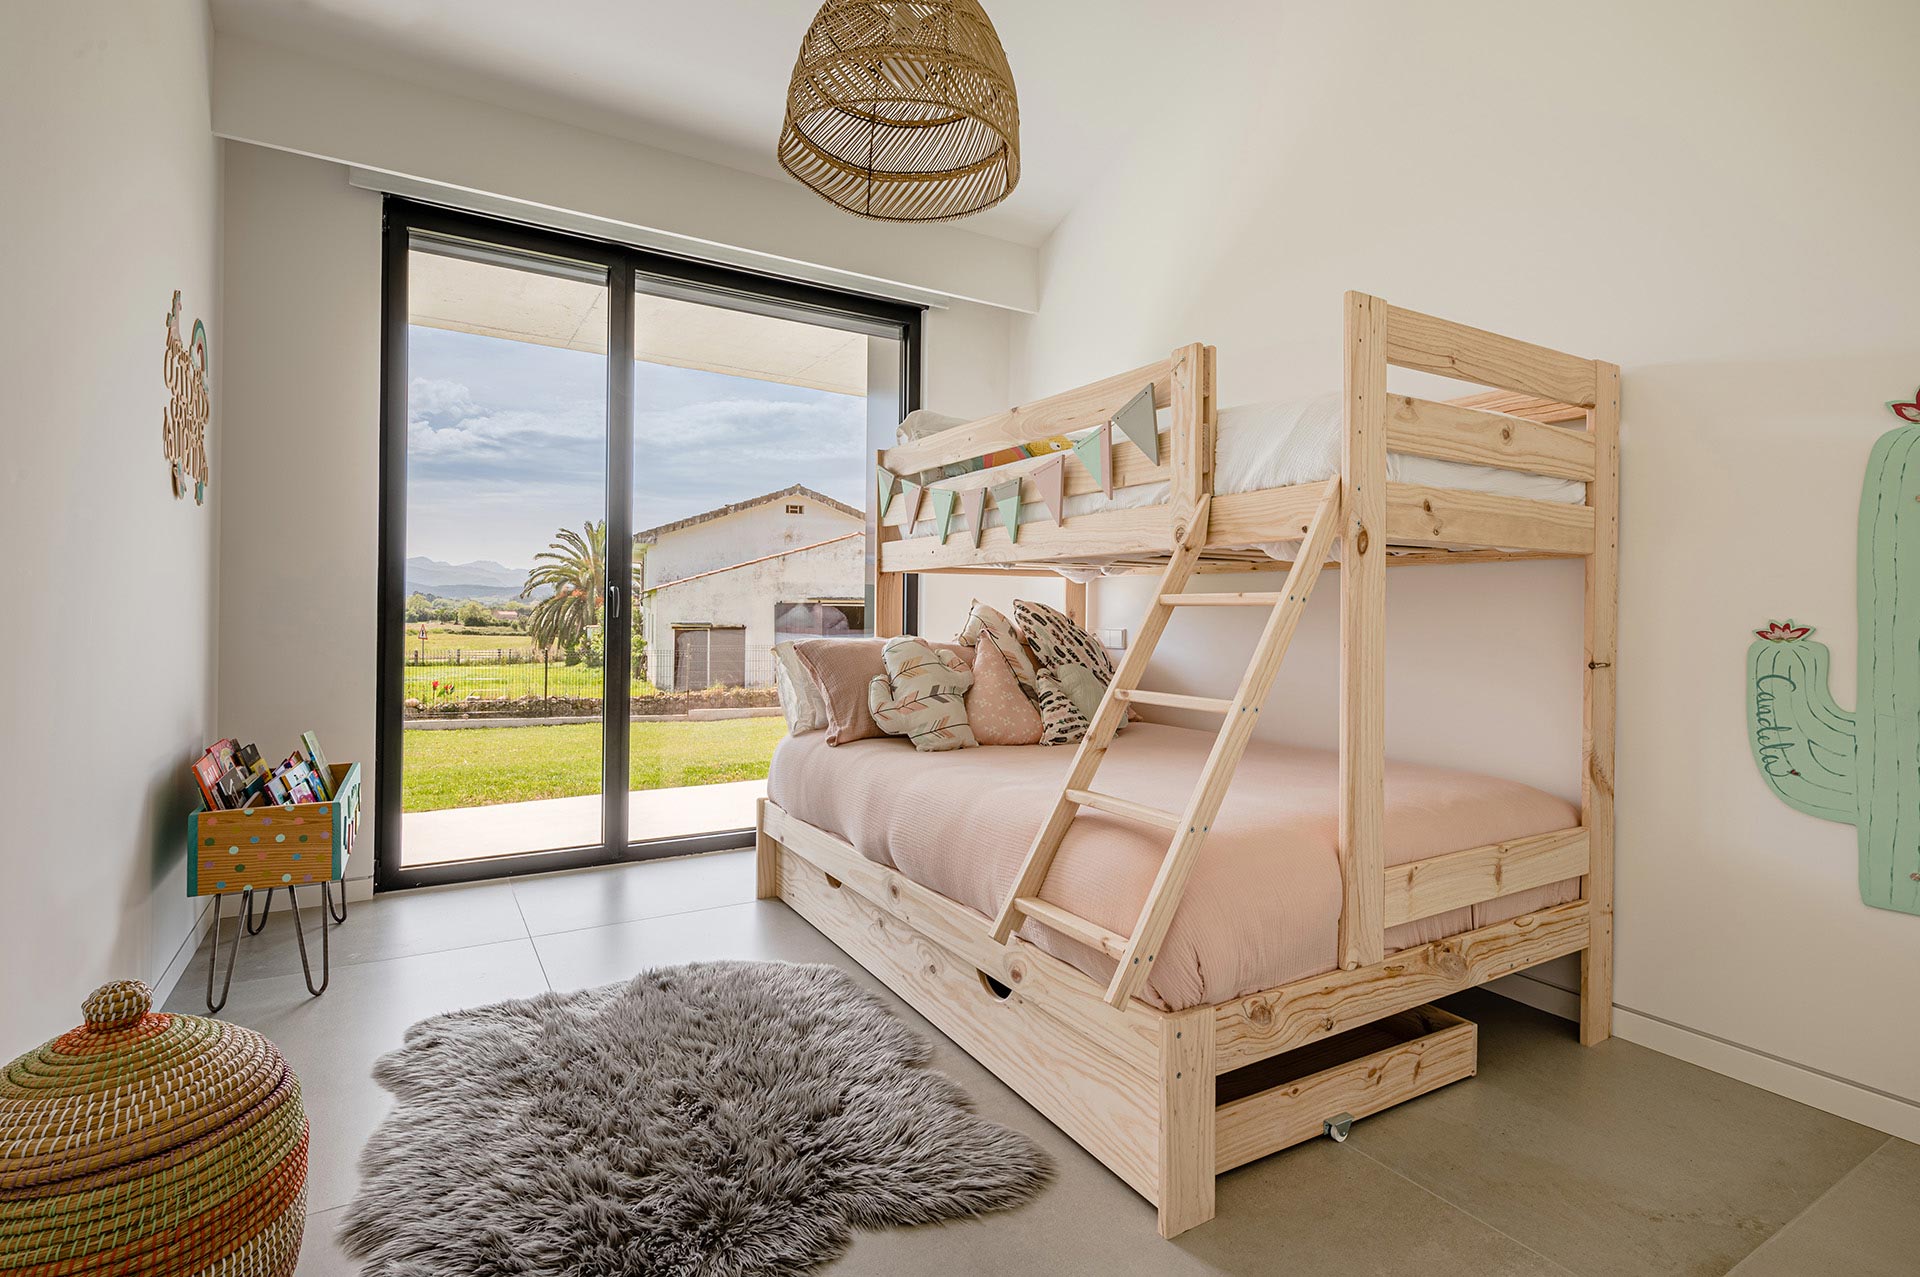 Interiorismo de dormitorio infantil diseñado por Moah Arquitectos en Suesa. Cantabria.